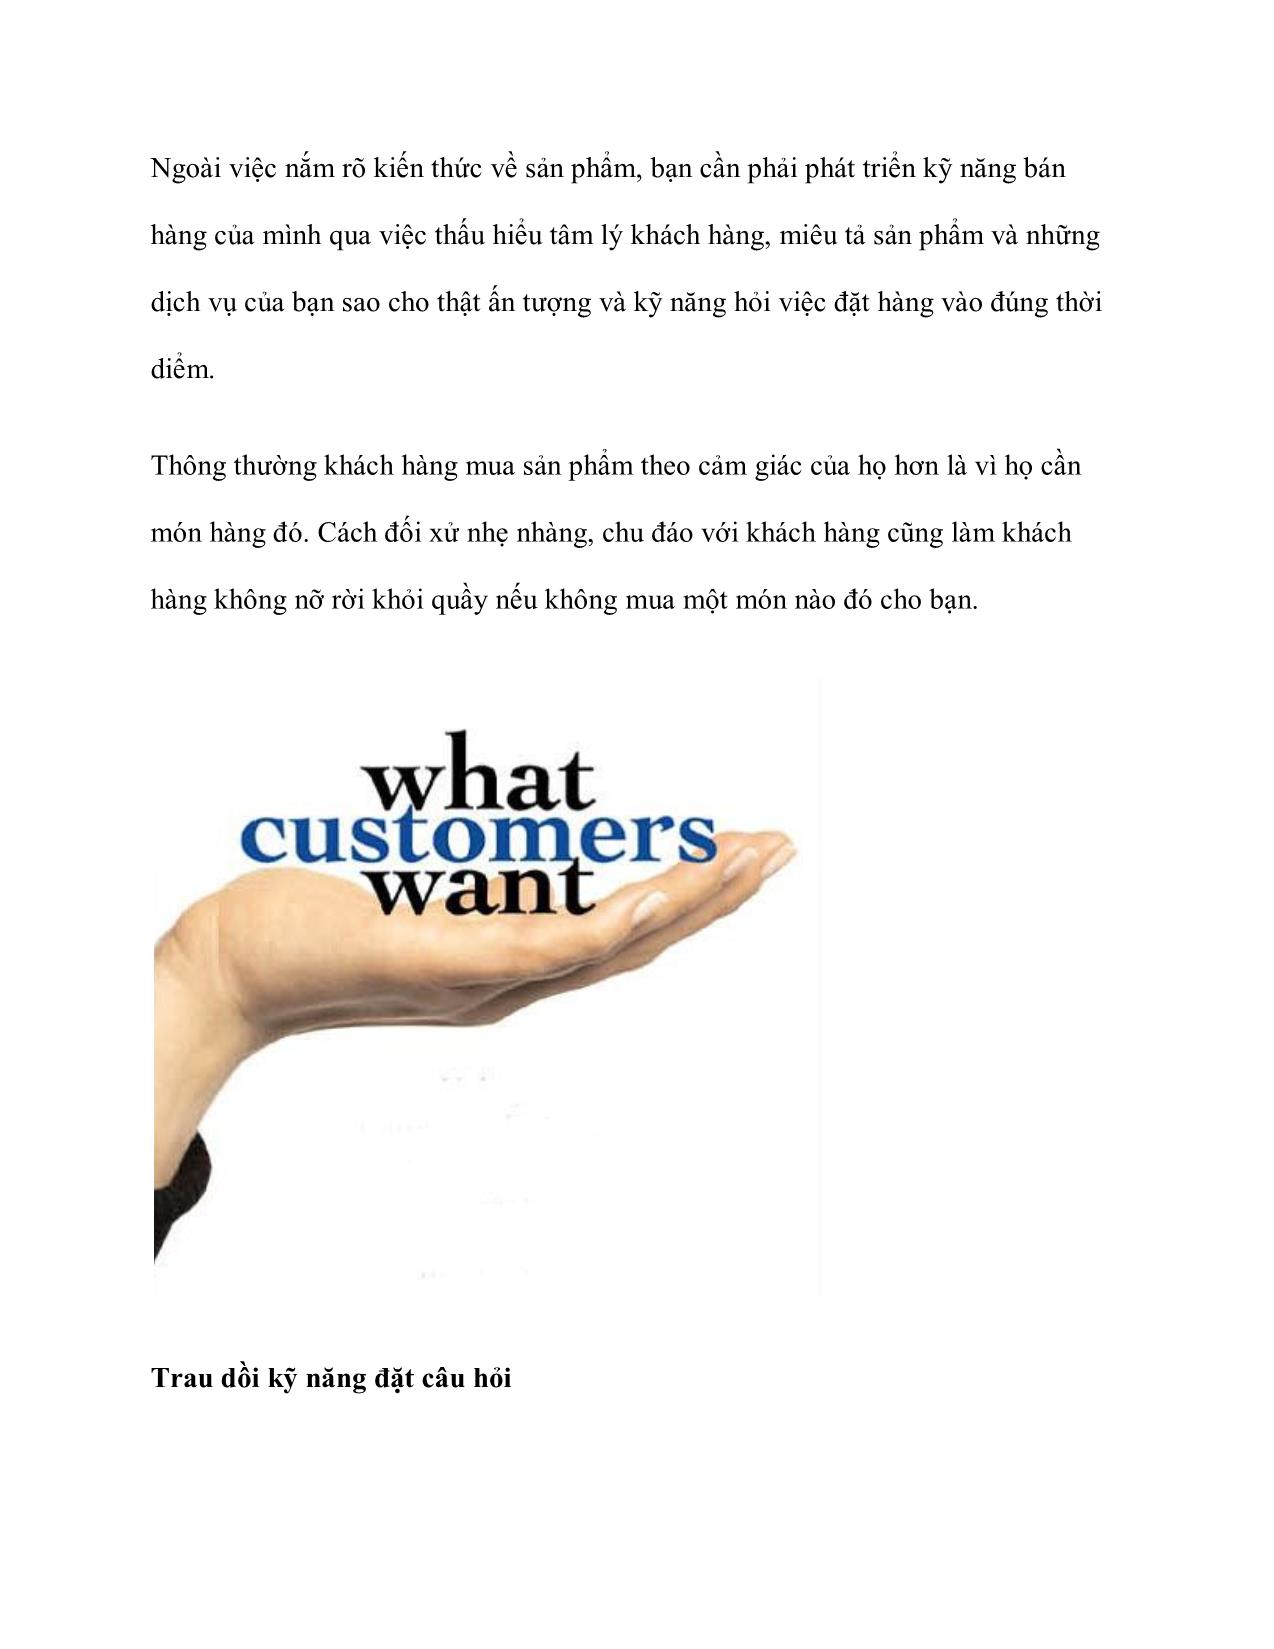 Tài liệu “Chìa khóa vàng” cho người làm sales - Thuyết phục khách hàng là một nghệ thuật trang 3